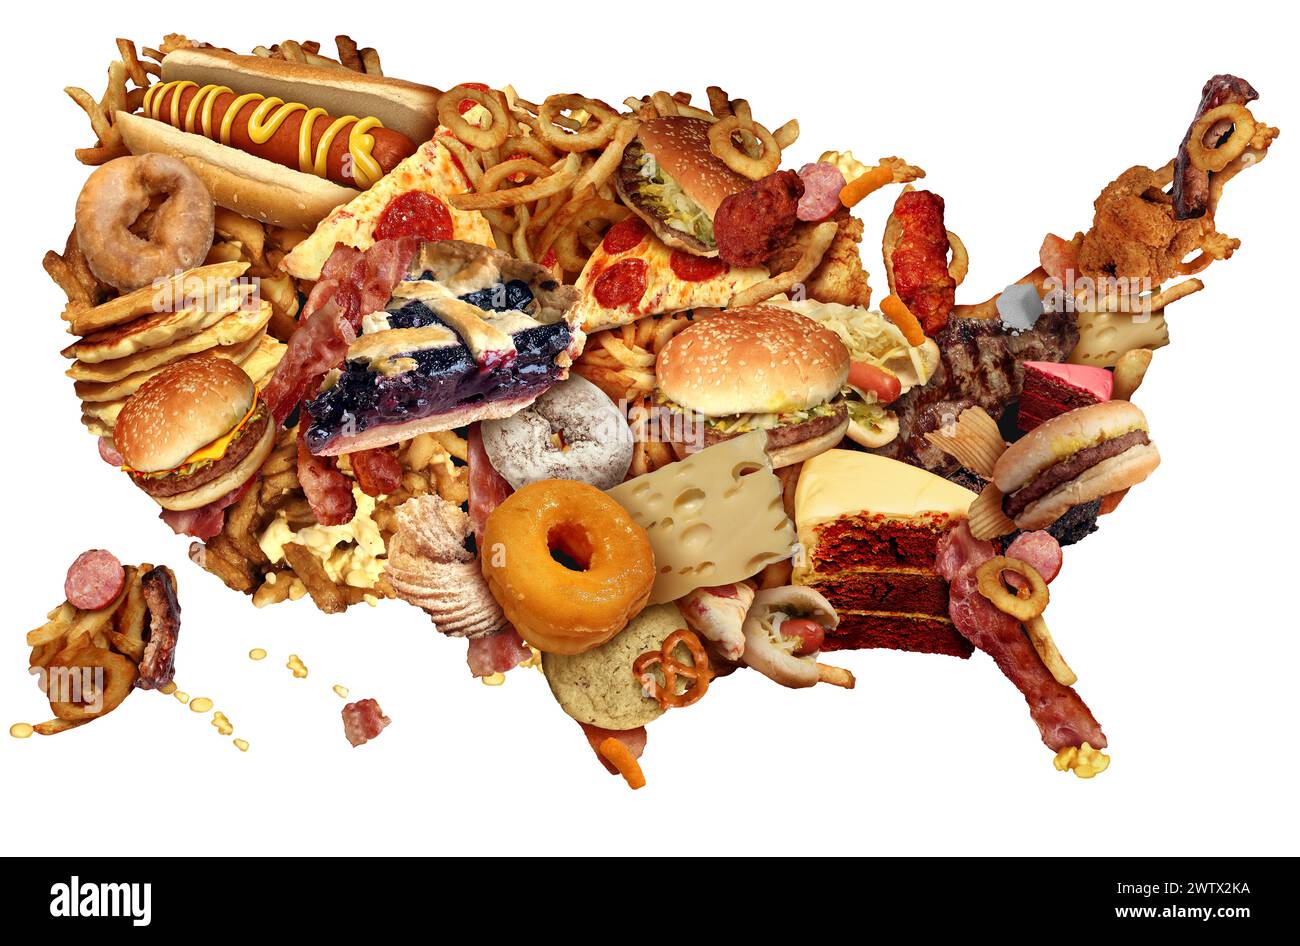 US Junk Food Diet comme un américain malsain habitudes alimentaires représentant l'obésité des États-Unis et les habitudes alimentaires à haut cholestérol gras comme un américain h Banque D'Images